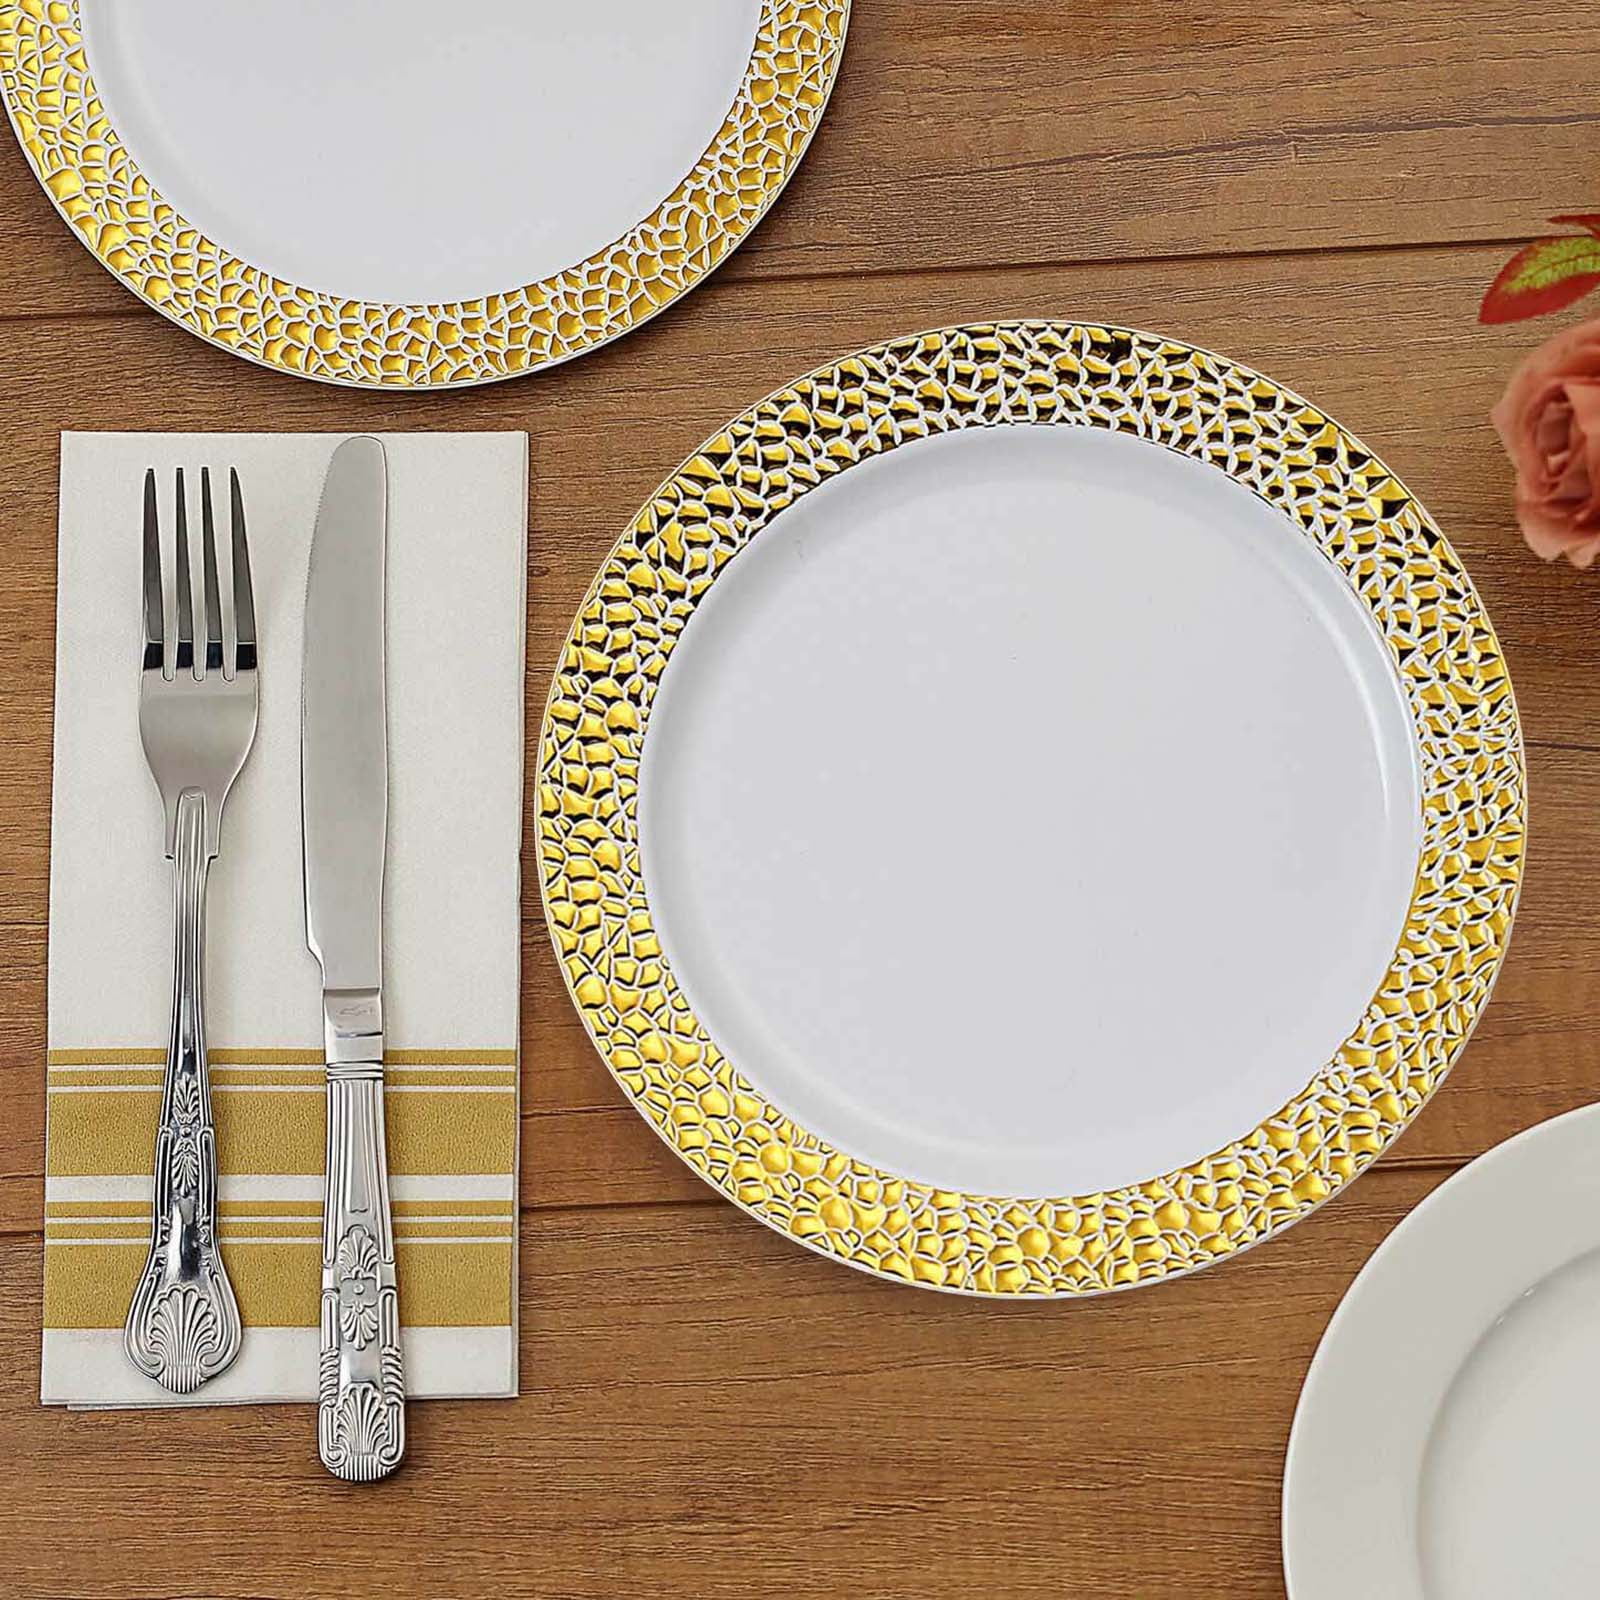 Set Elegant Disposable Plastic Plates Gold Rim White Heavy duty Premium Plates for Party Wedding Appetizer Fancy PB 50 Pieces for 25 guests Reusable 25- Dessert Plates 25- Dinner Plates 